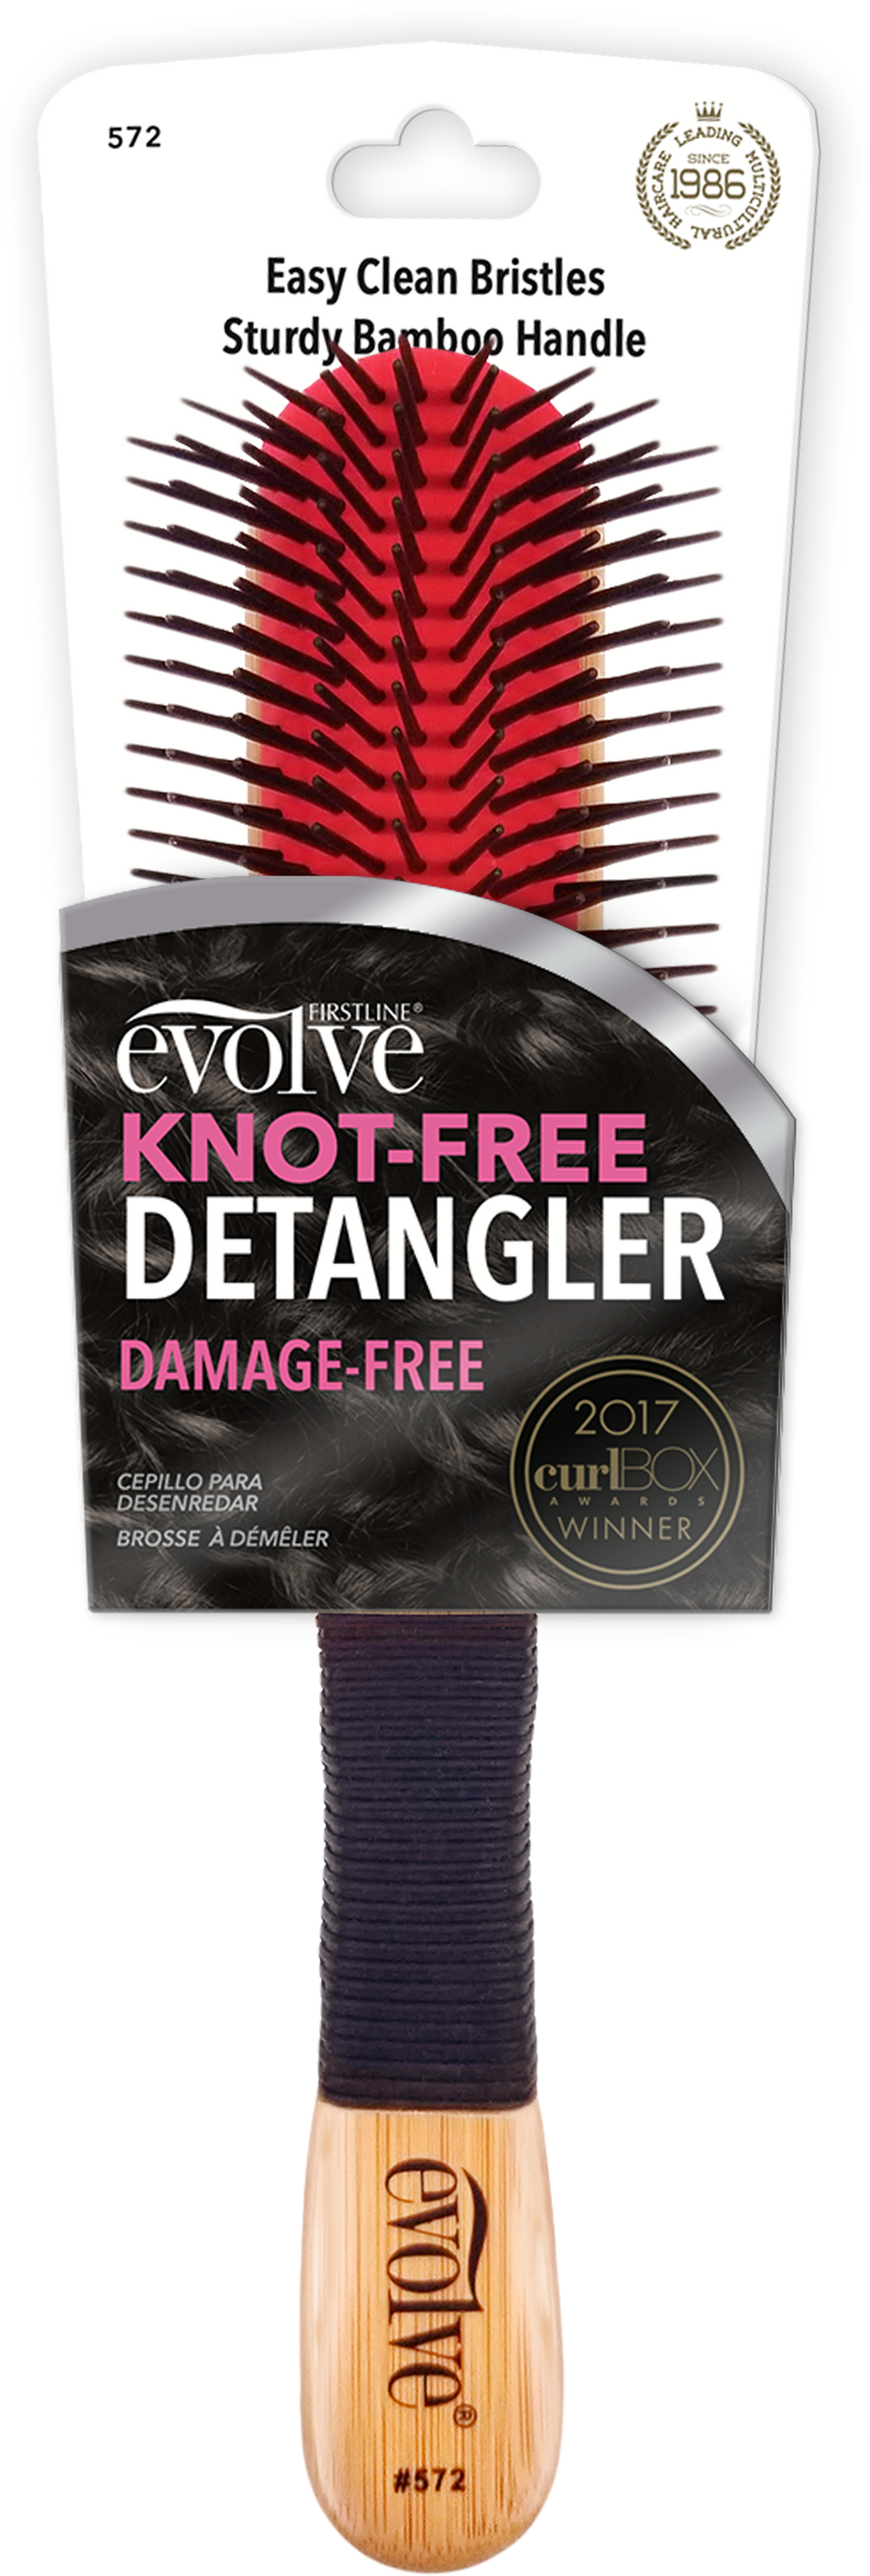 Evolve®Knot-Free Detangler, 572